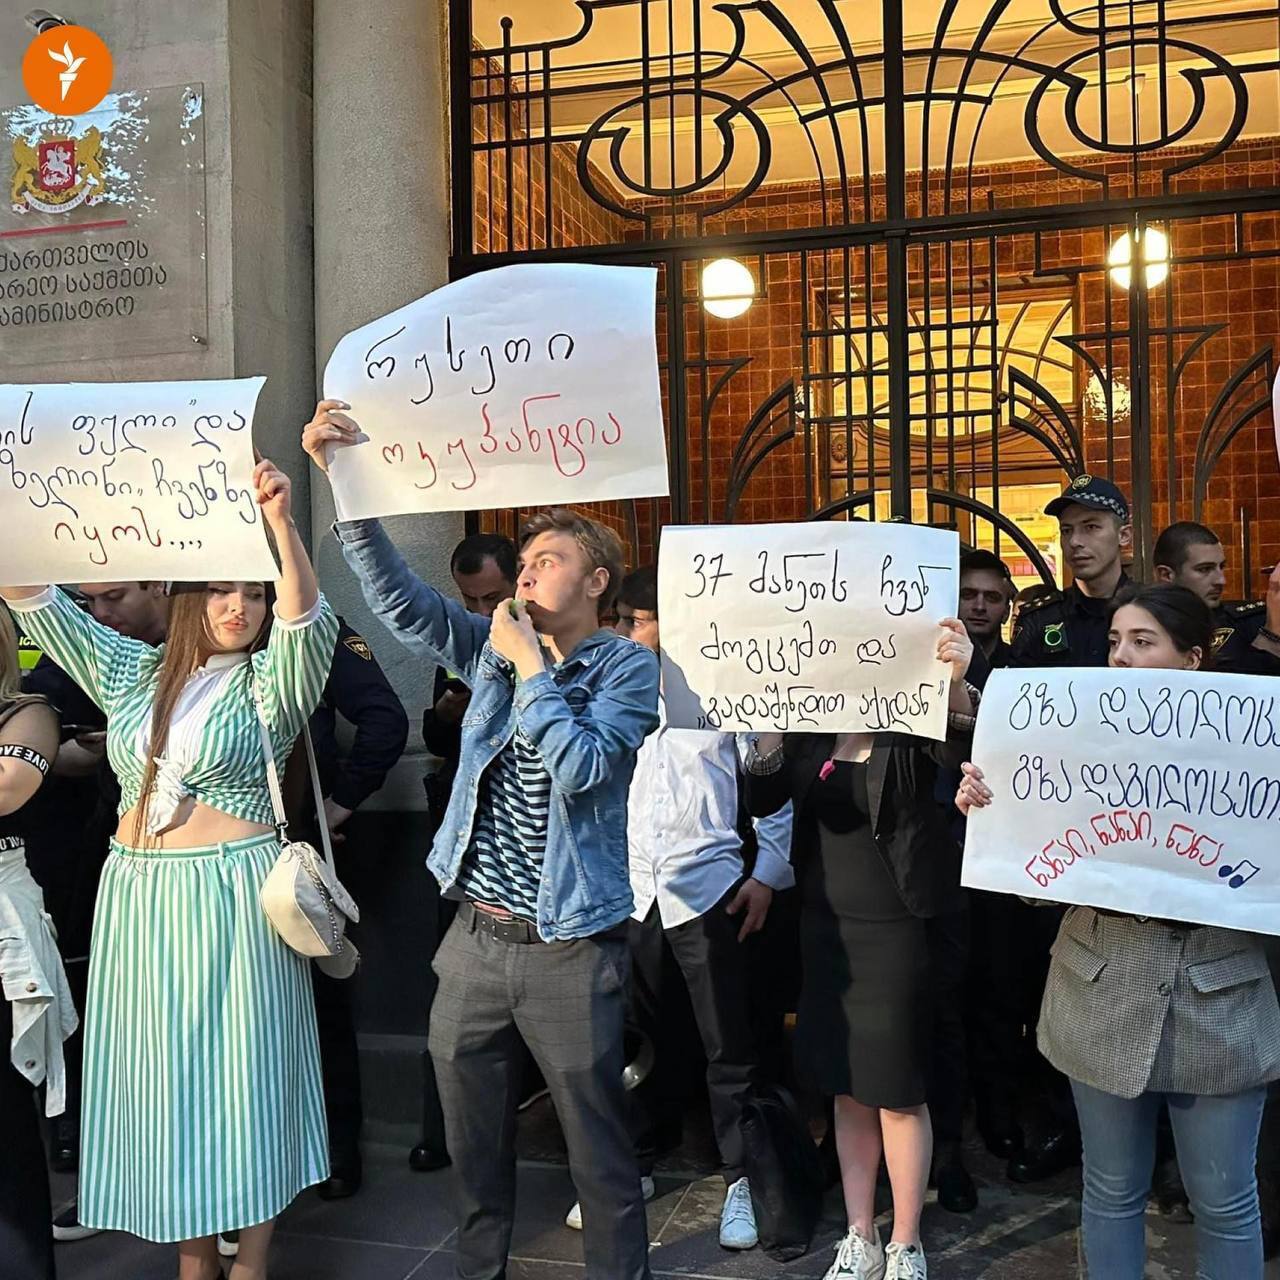 Грузия хочет разрешить прямые рейсы российским авиакомпаниям: в Тбилиси протесты. Фото